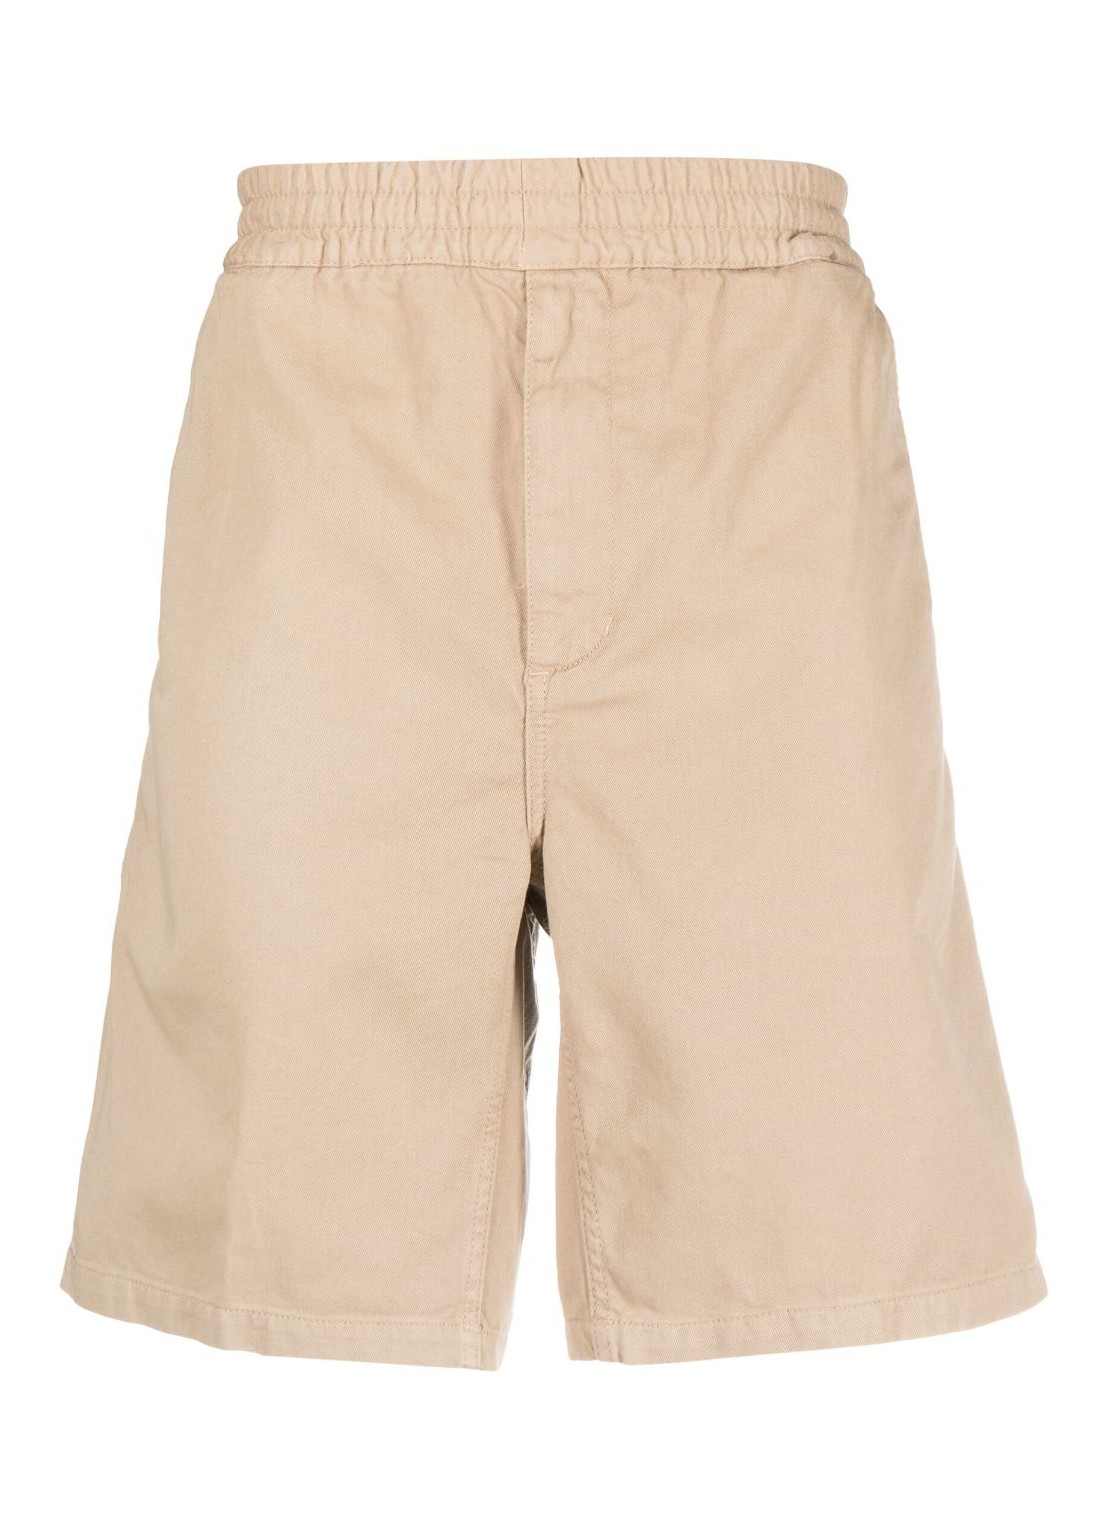 Pantalon corto carhartt short pant manflint short - i030480 g1gd talla L
 